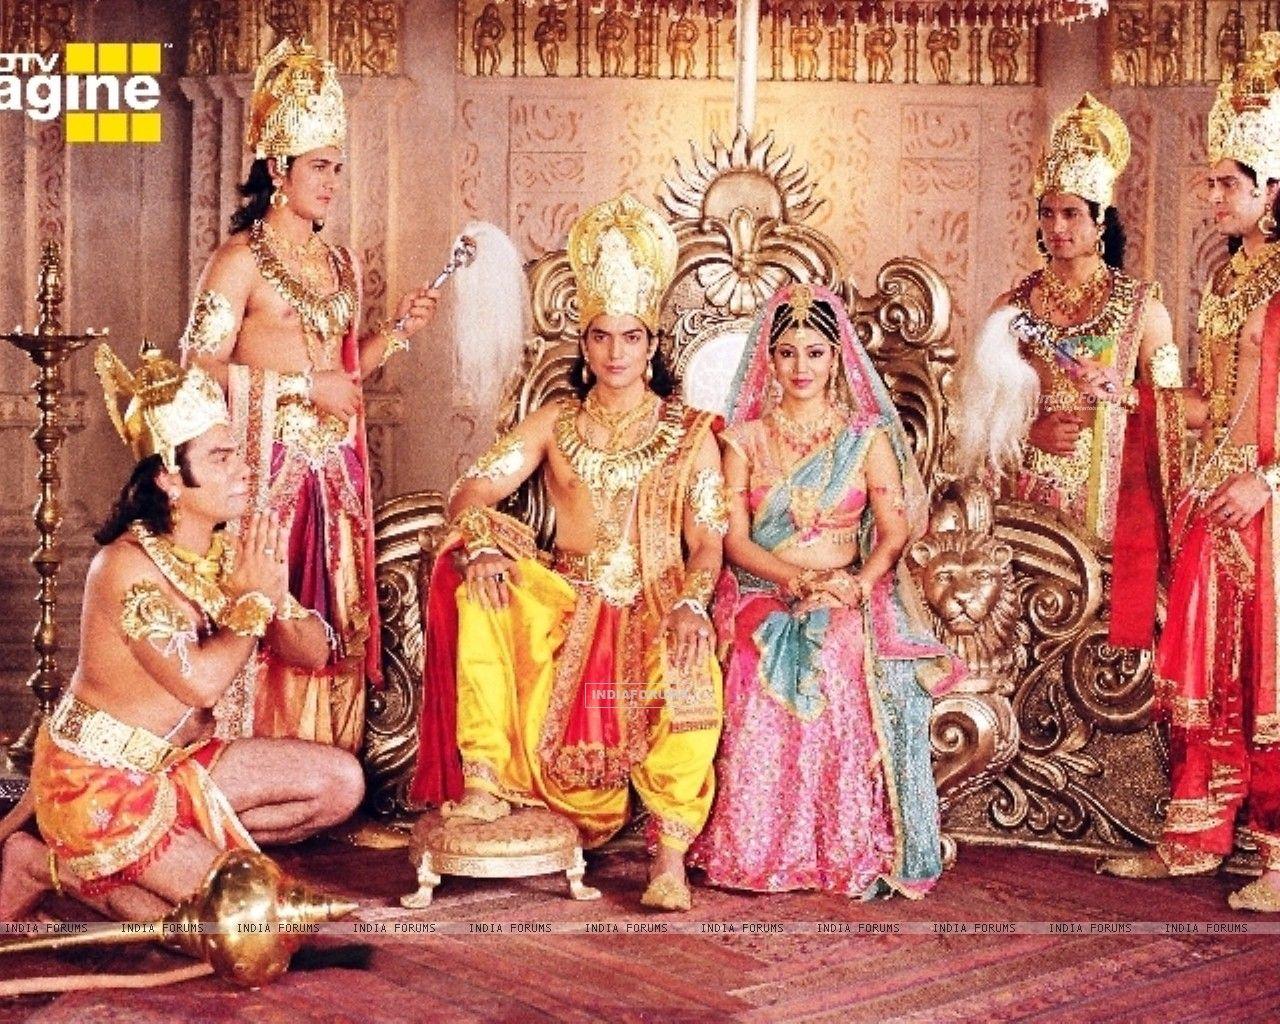 ramayanam serial in sun tv full episode free download